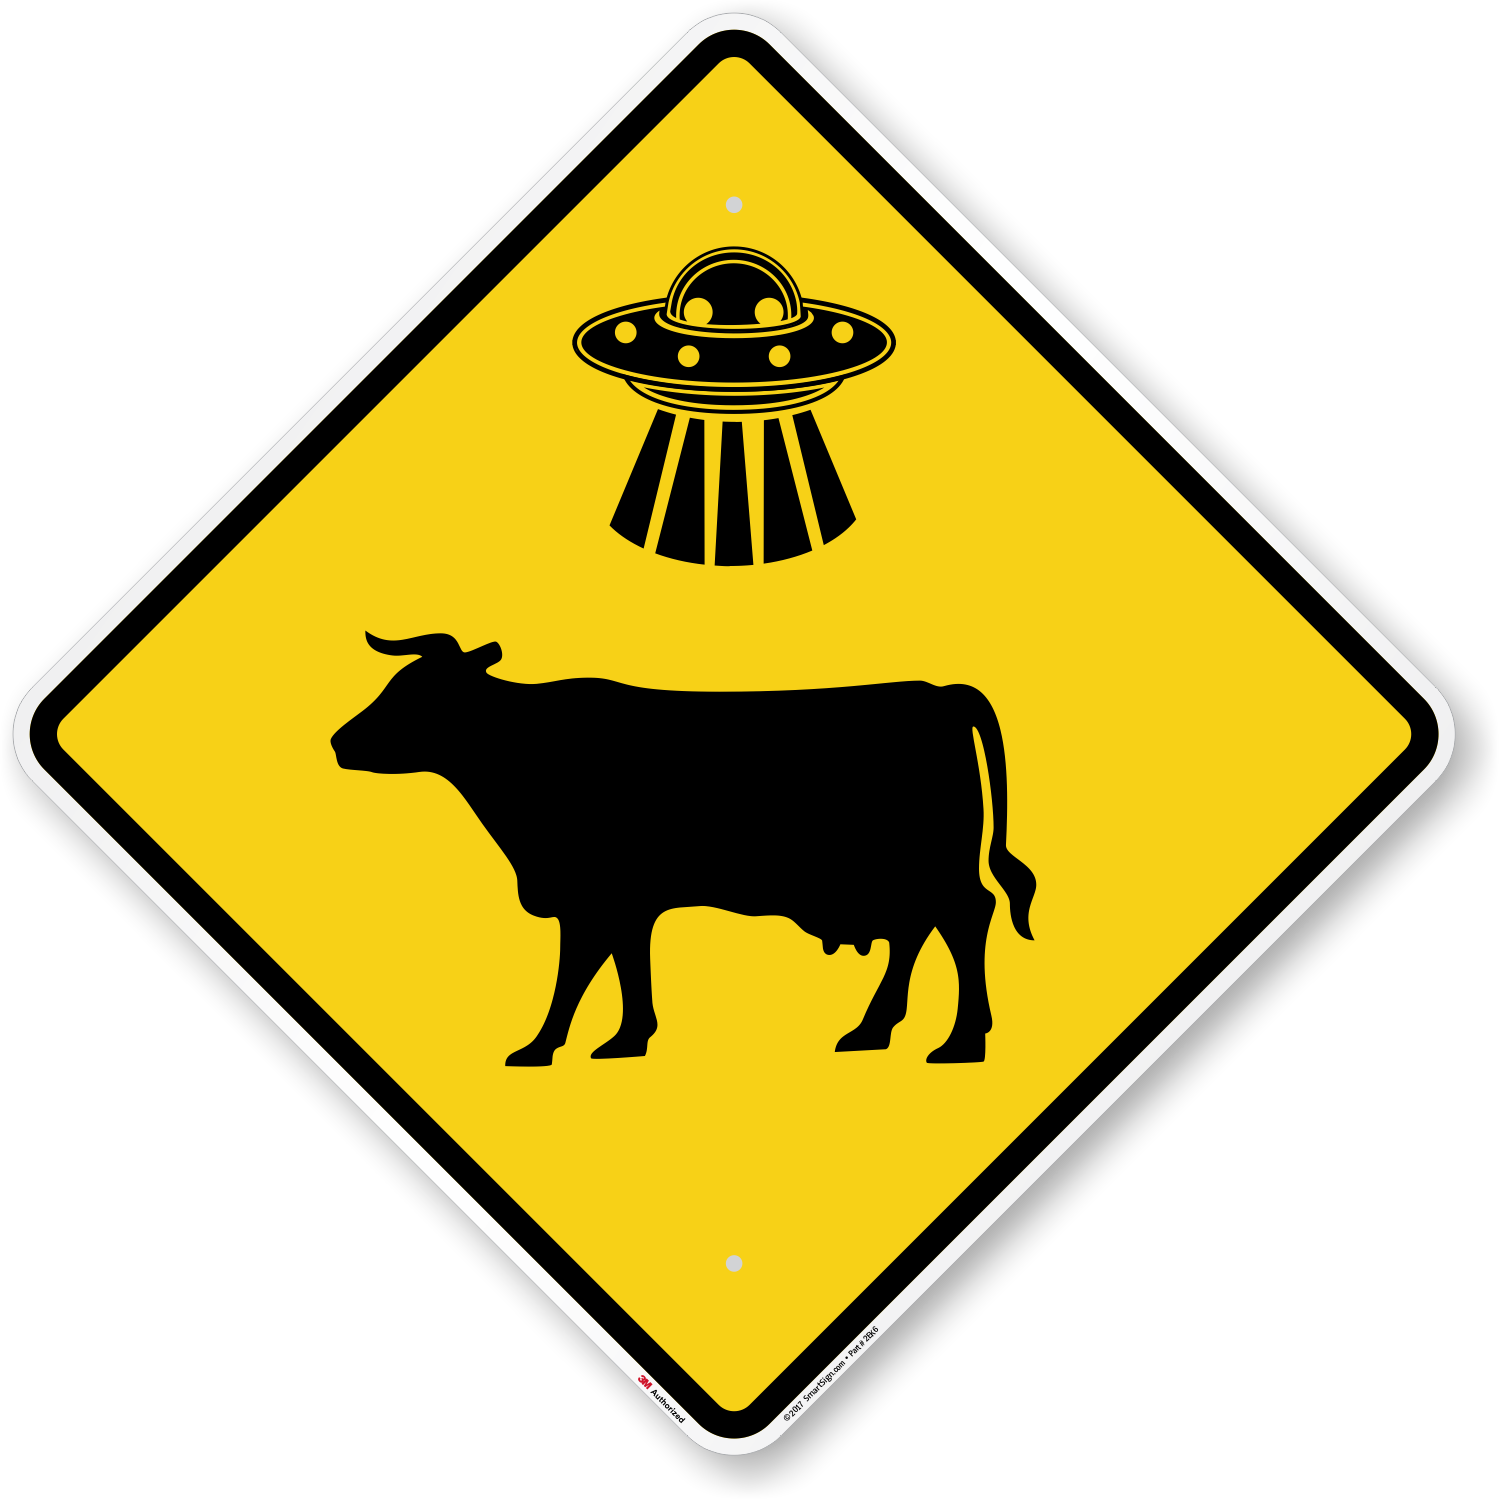 alien abduction cow